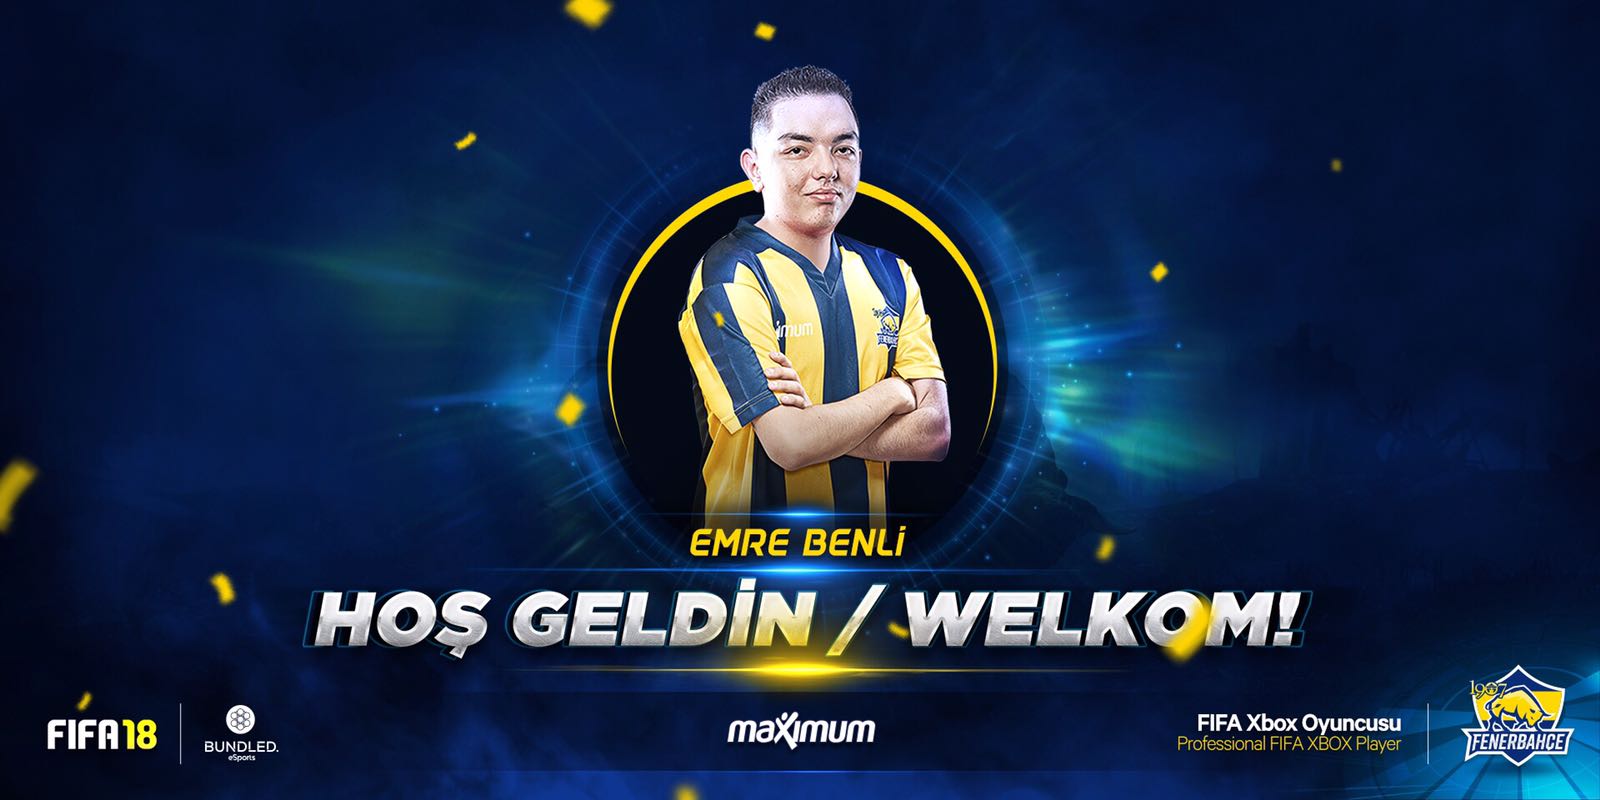 Emre Benli Makes Dream Transfer To Fenerbahçe